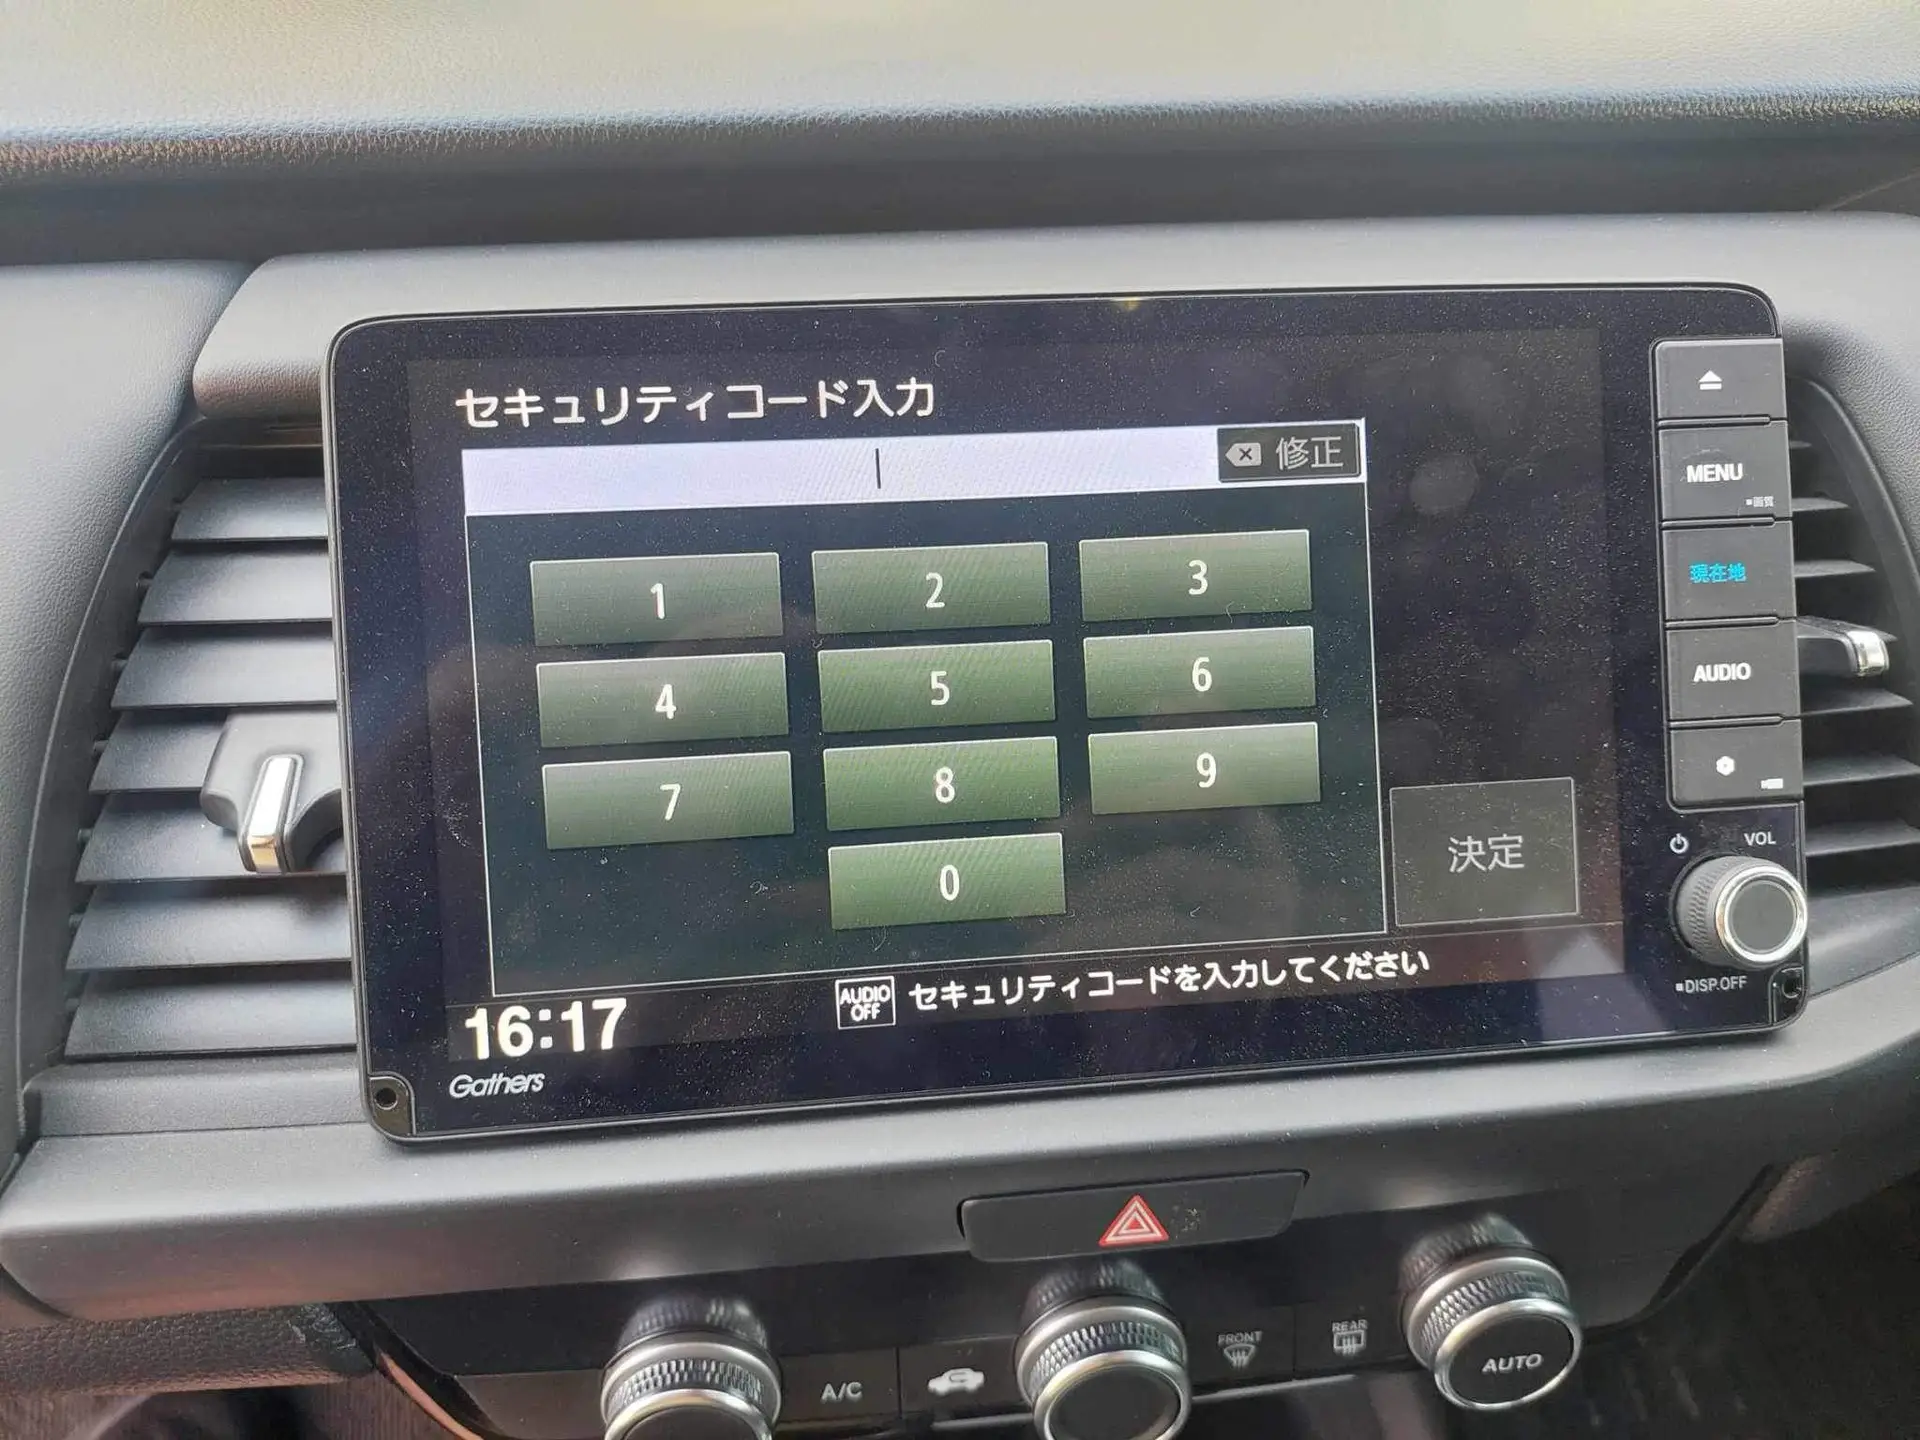 Honda gathers VXU-215FTi unlock | Honda VXU-215 sd map card